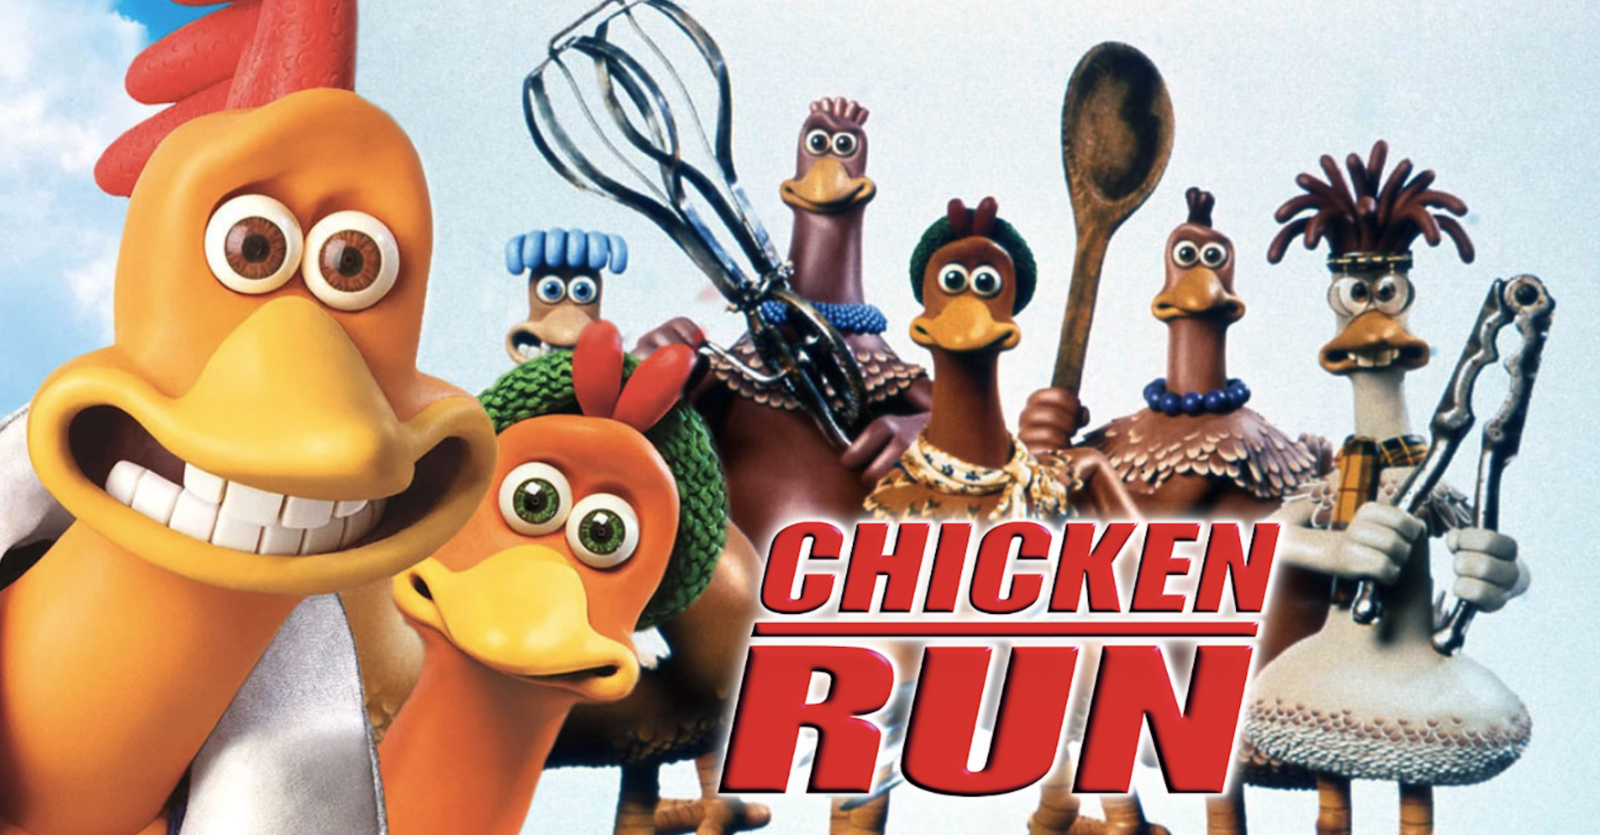 Affiche Chicken Run